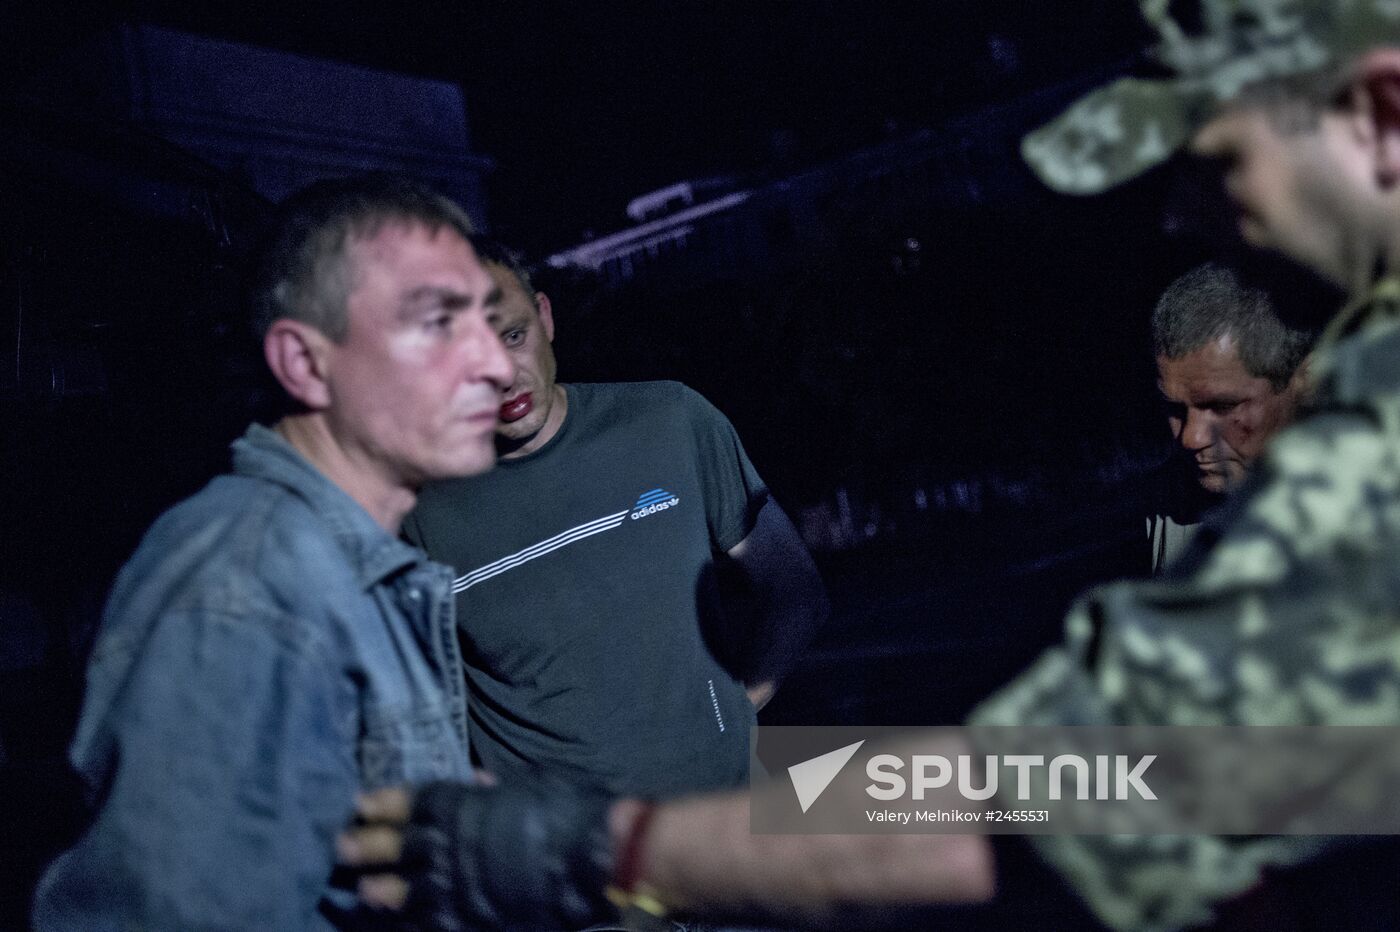 Rapid response unit of people's militia in Lugansk